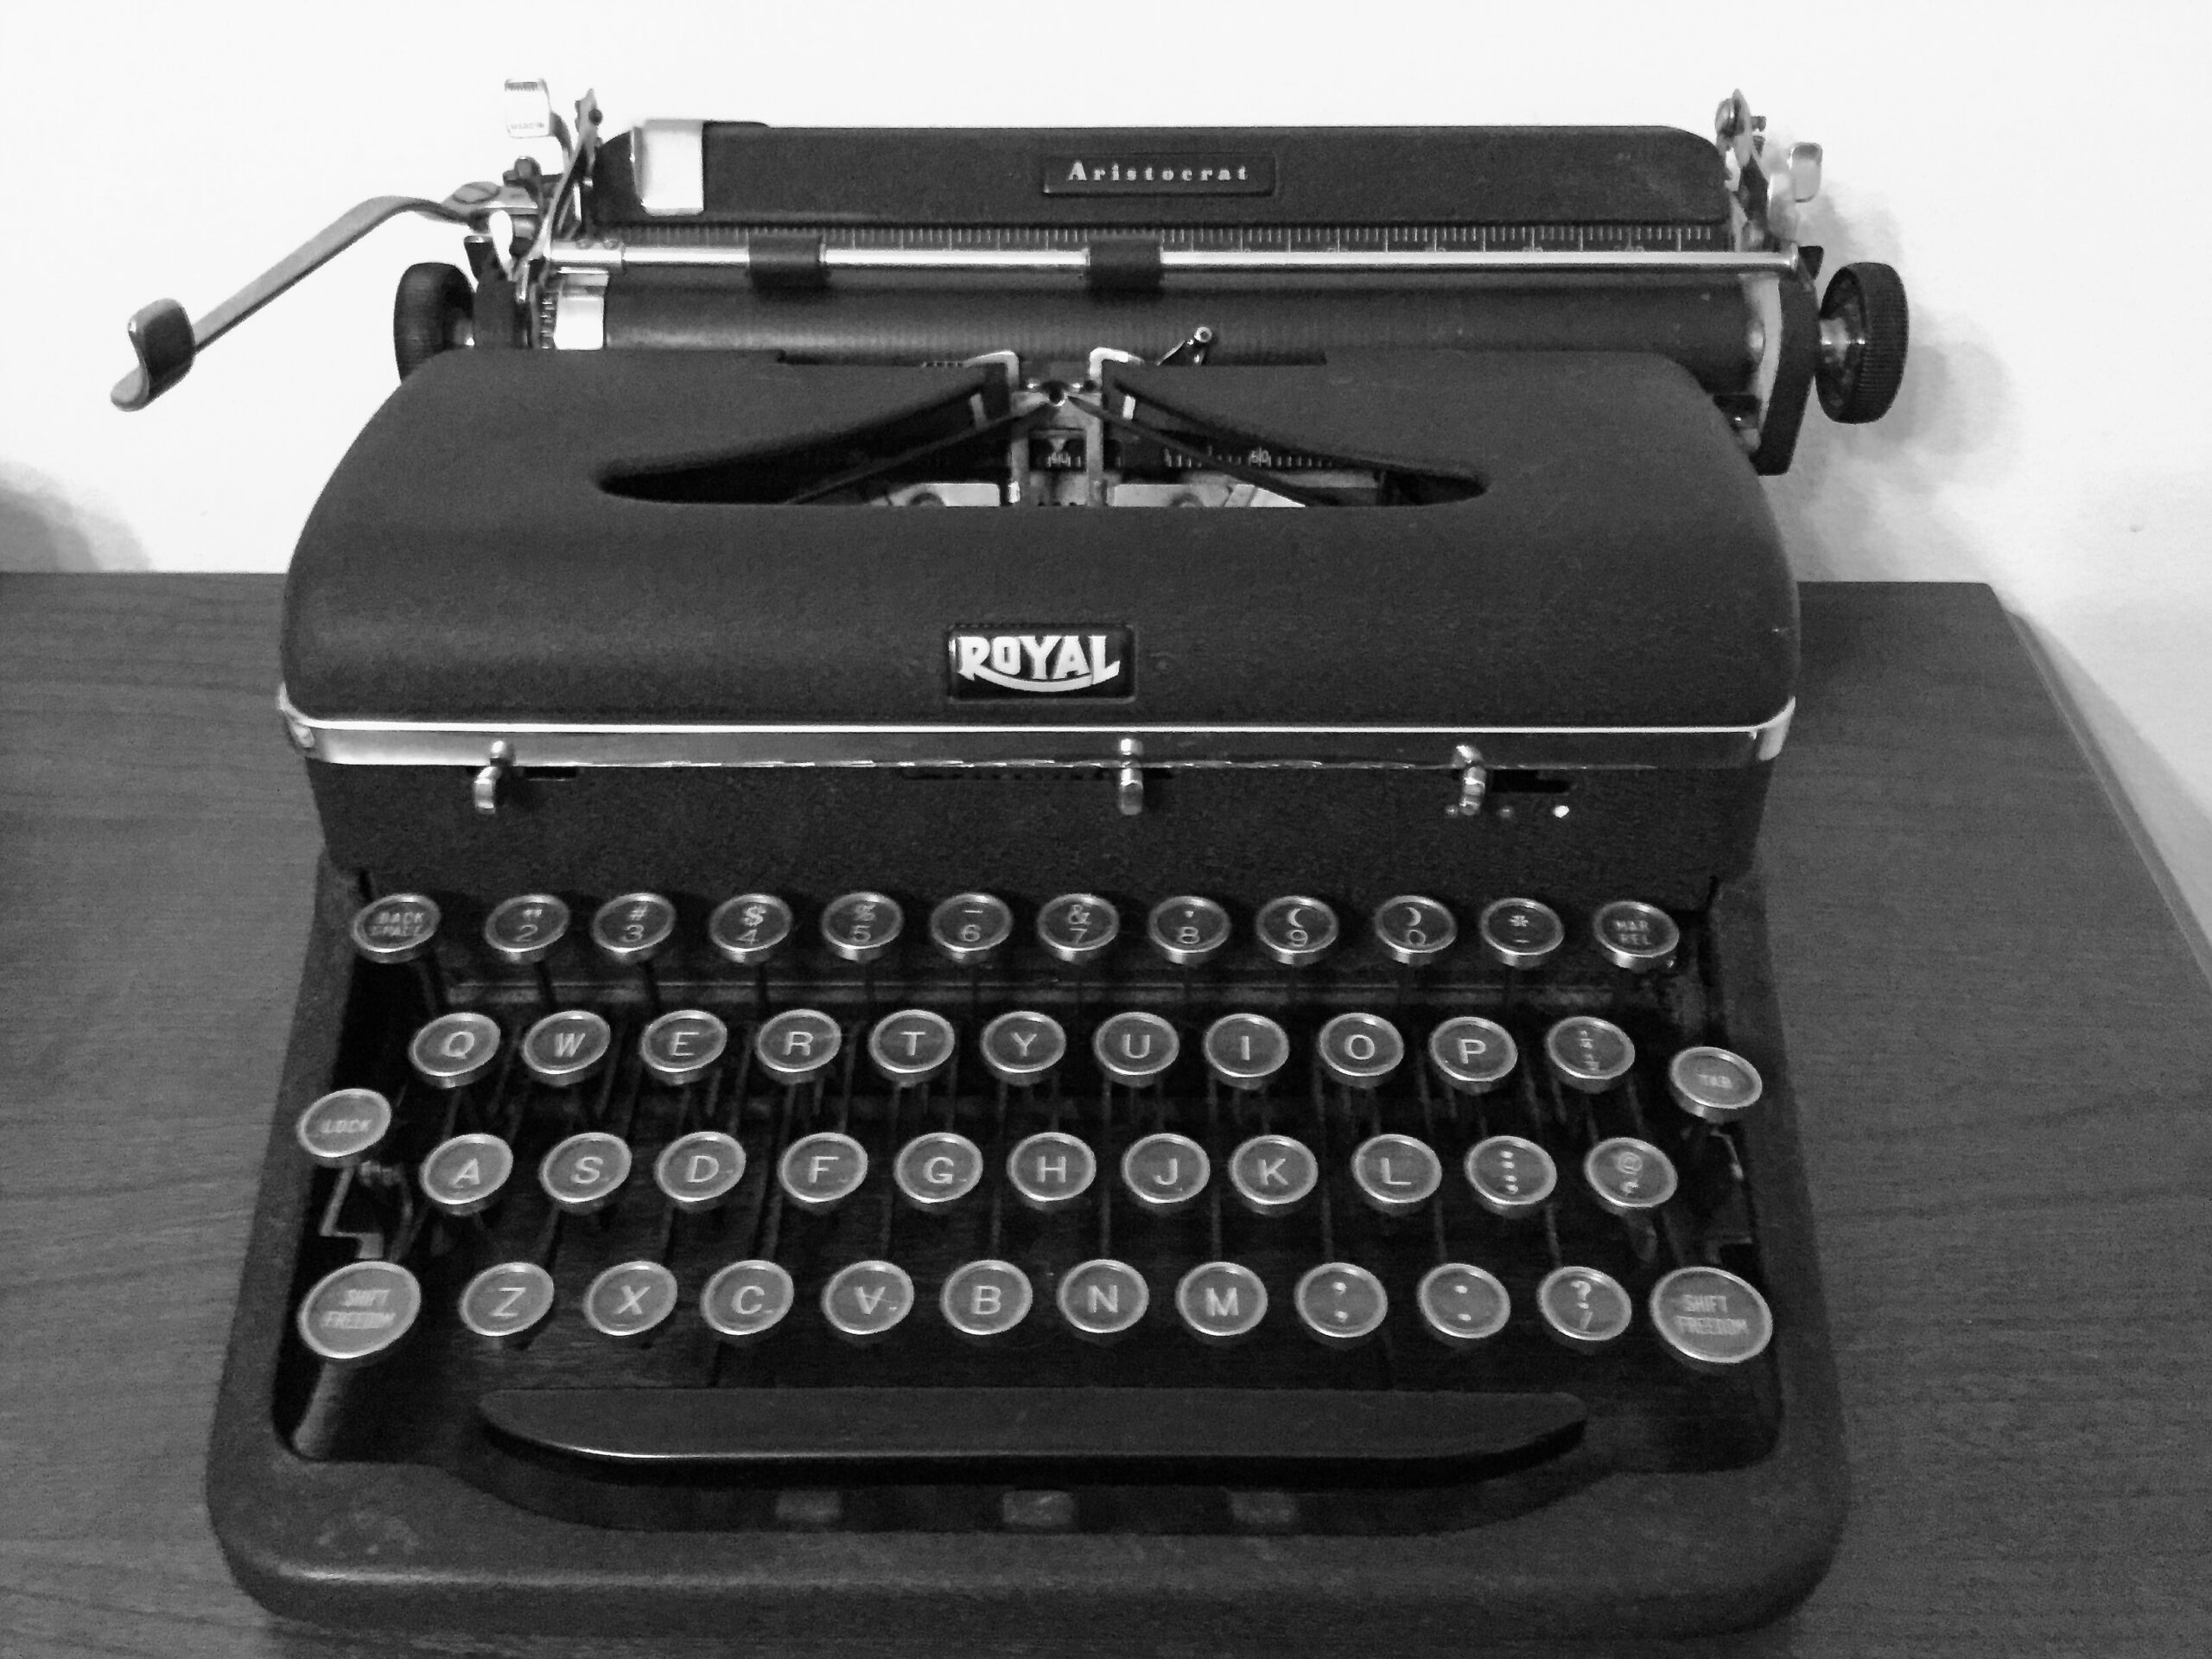 old Royal typewriter in black and white